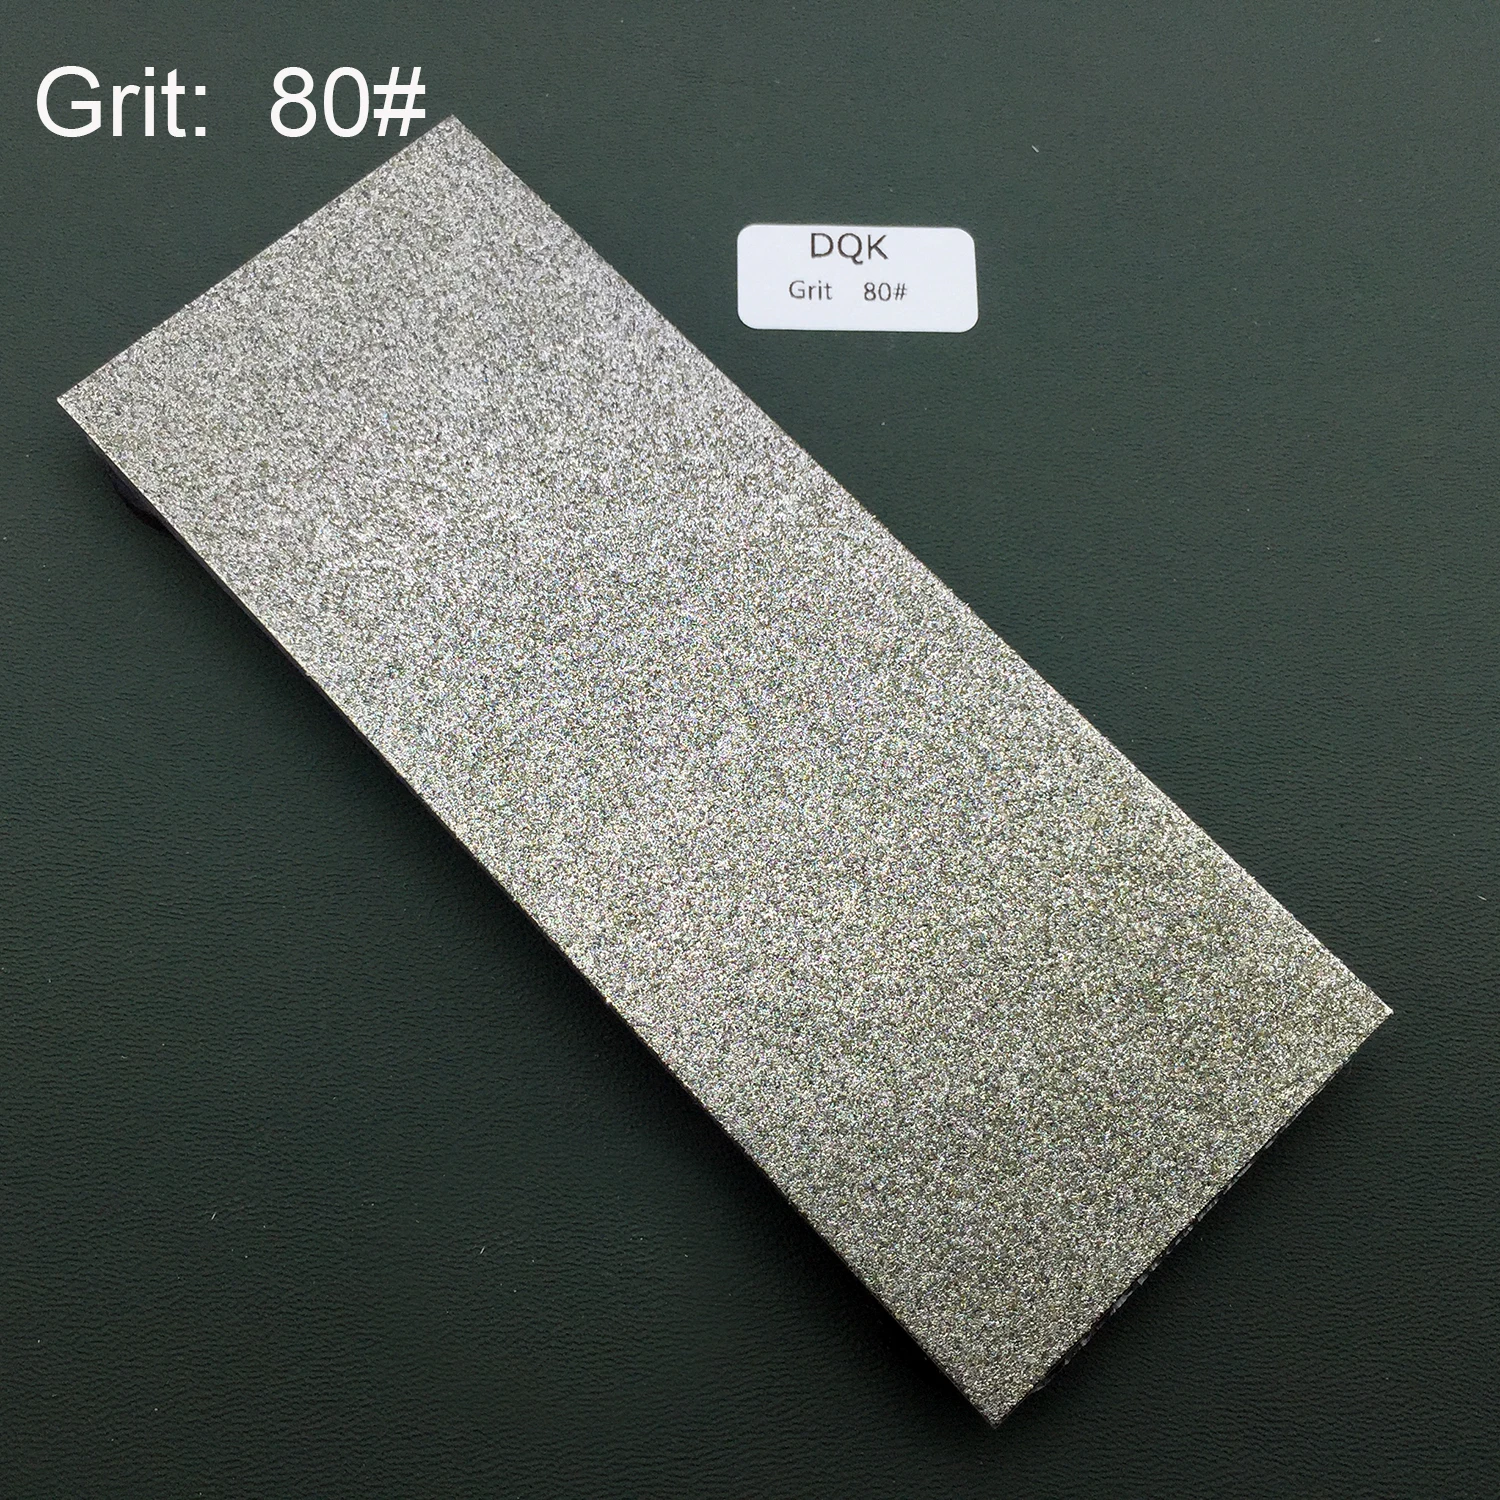 80-3000# Алмазная точилка для ножей Профессиональные кухонные инструменты заточка камней шлифовальный алмаз точильного камня инструменты - Цвет: 80 Grit